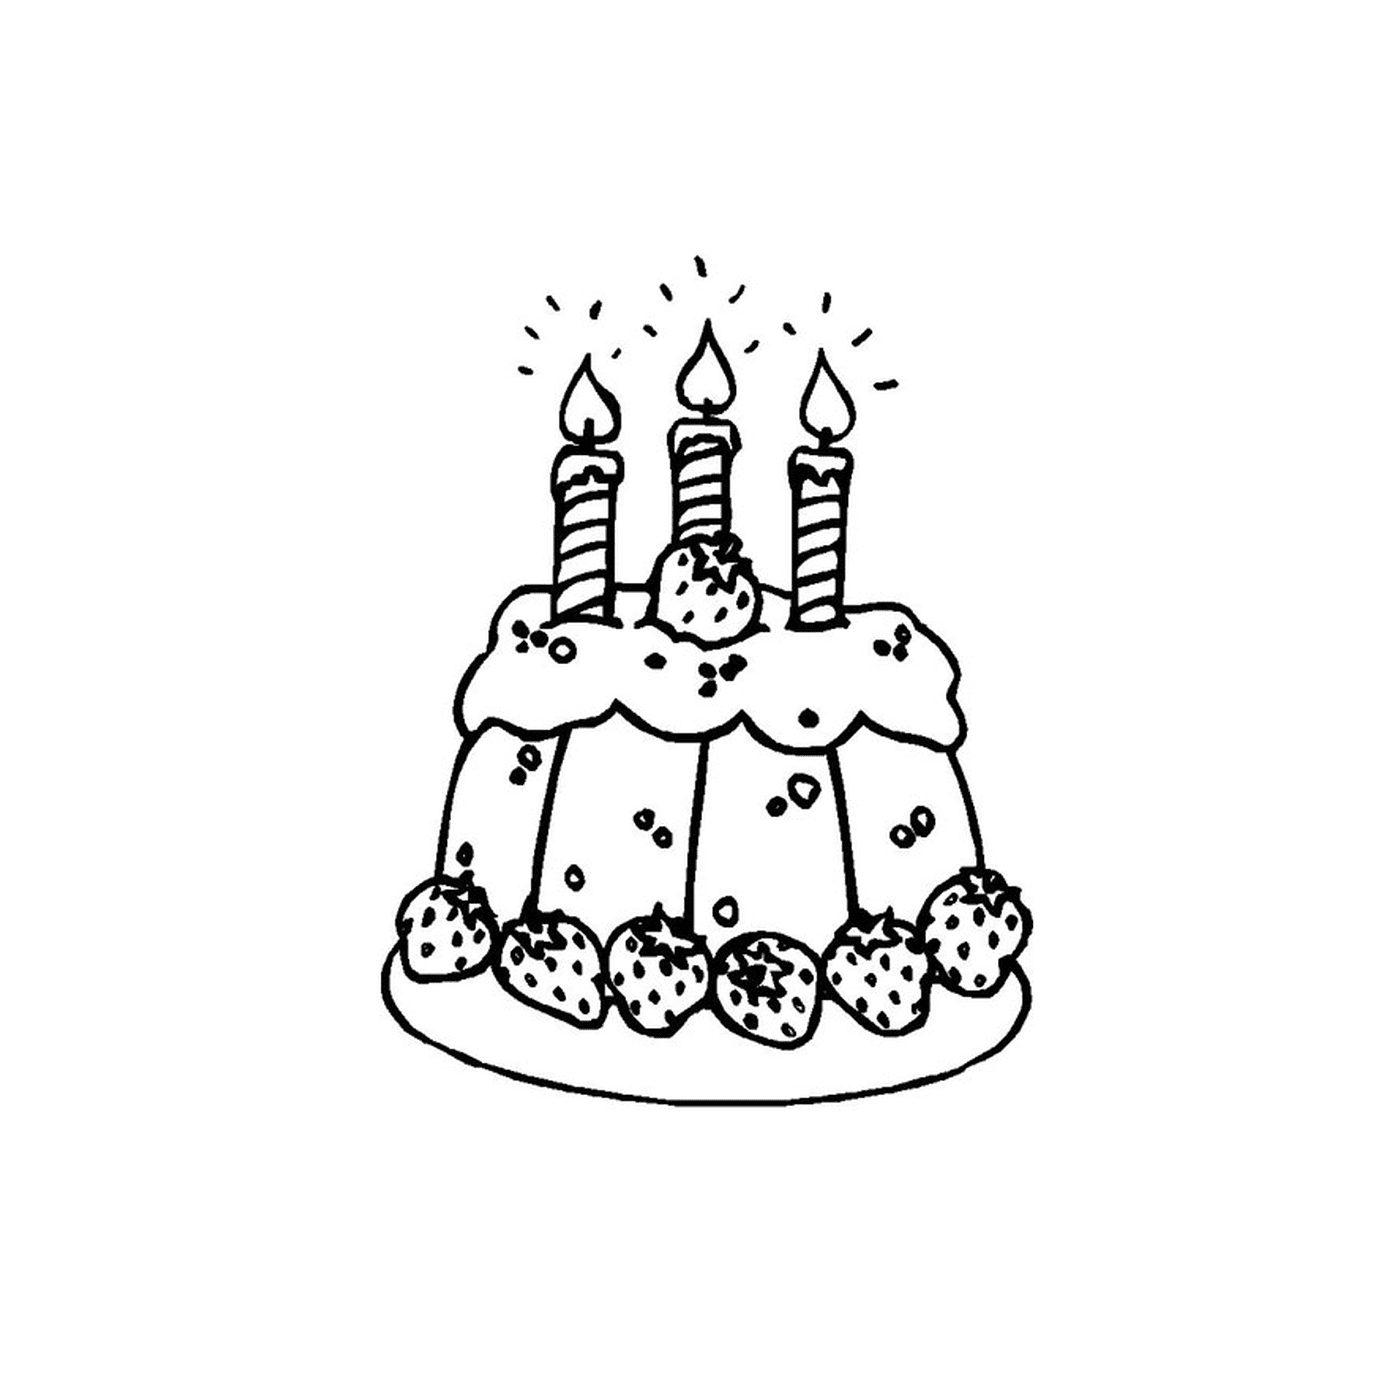  un pastel con tres velas encendidas 